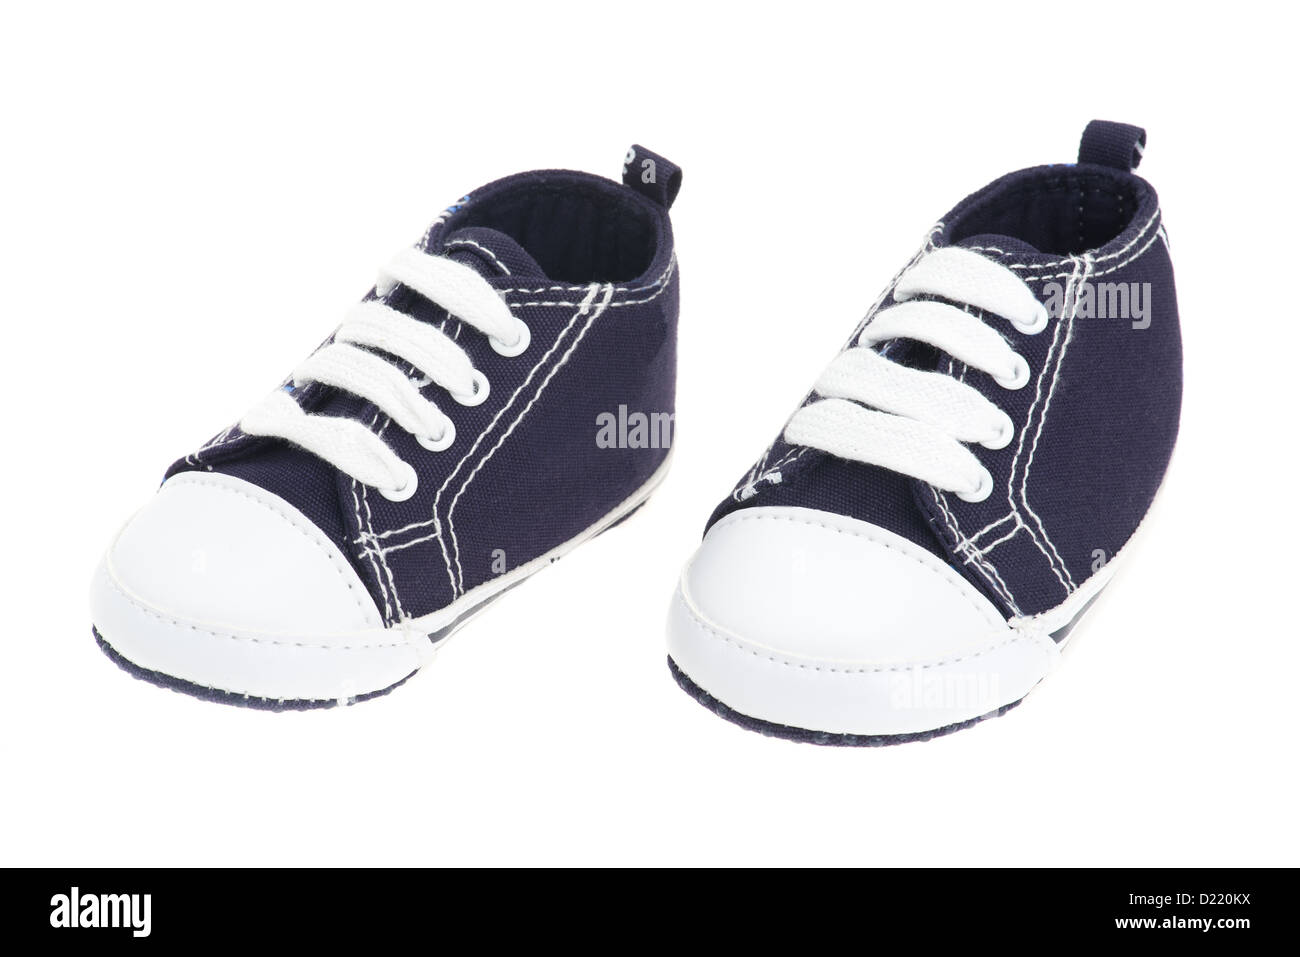 Petits garçons chaussures bébé denim bleu - studio photo avec un fond blanc Banque D'Images